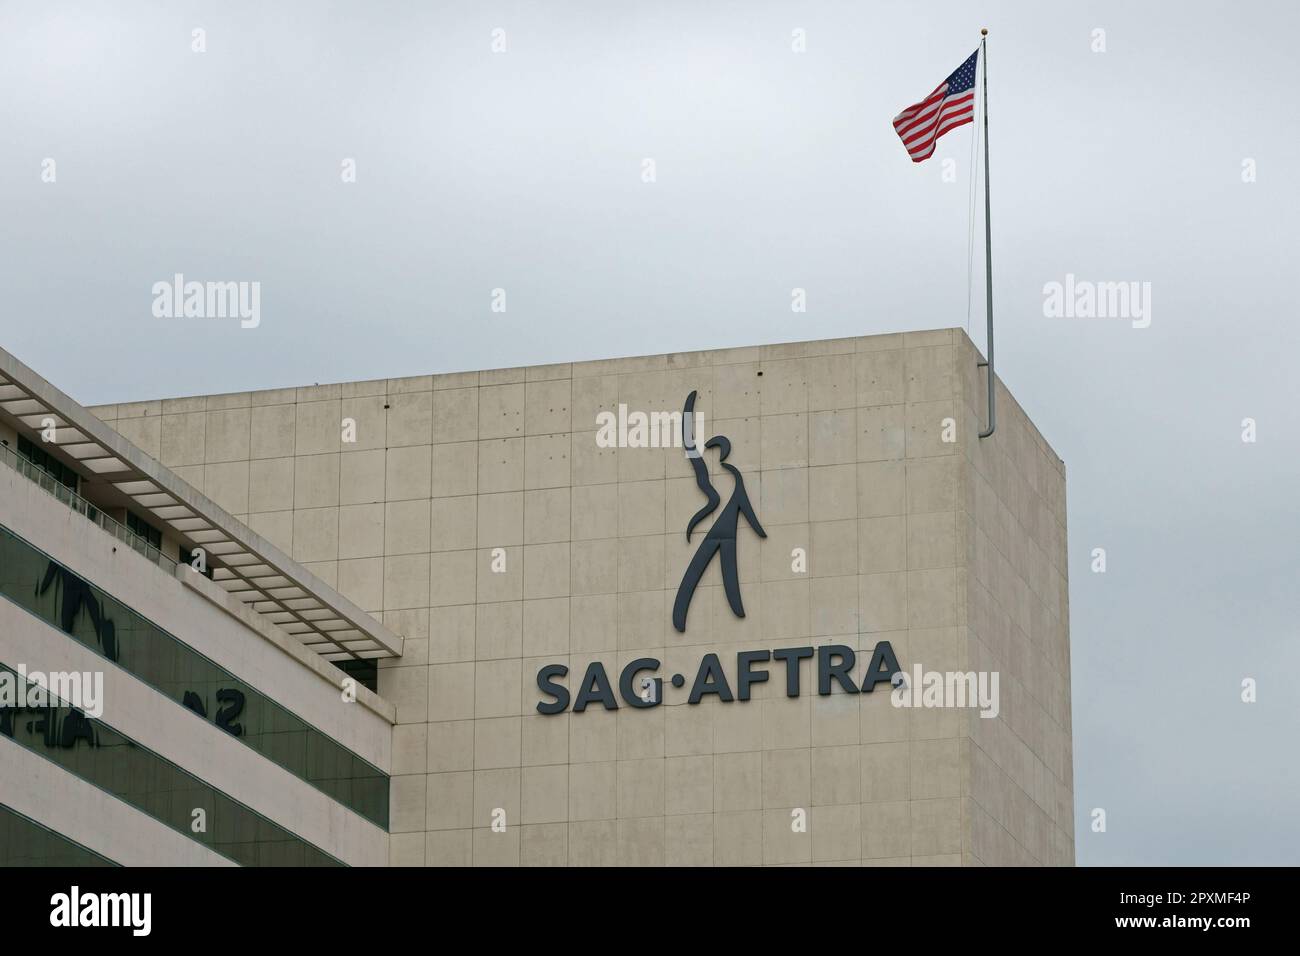 Los Angeles, California / USA - 21 maggio 2017: Il logo di SAG-AFTRA è riportato nella sede del sindacato nel distretto Mid-Wilshire di L.A. Foto Stock